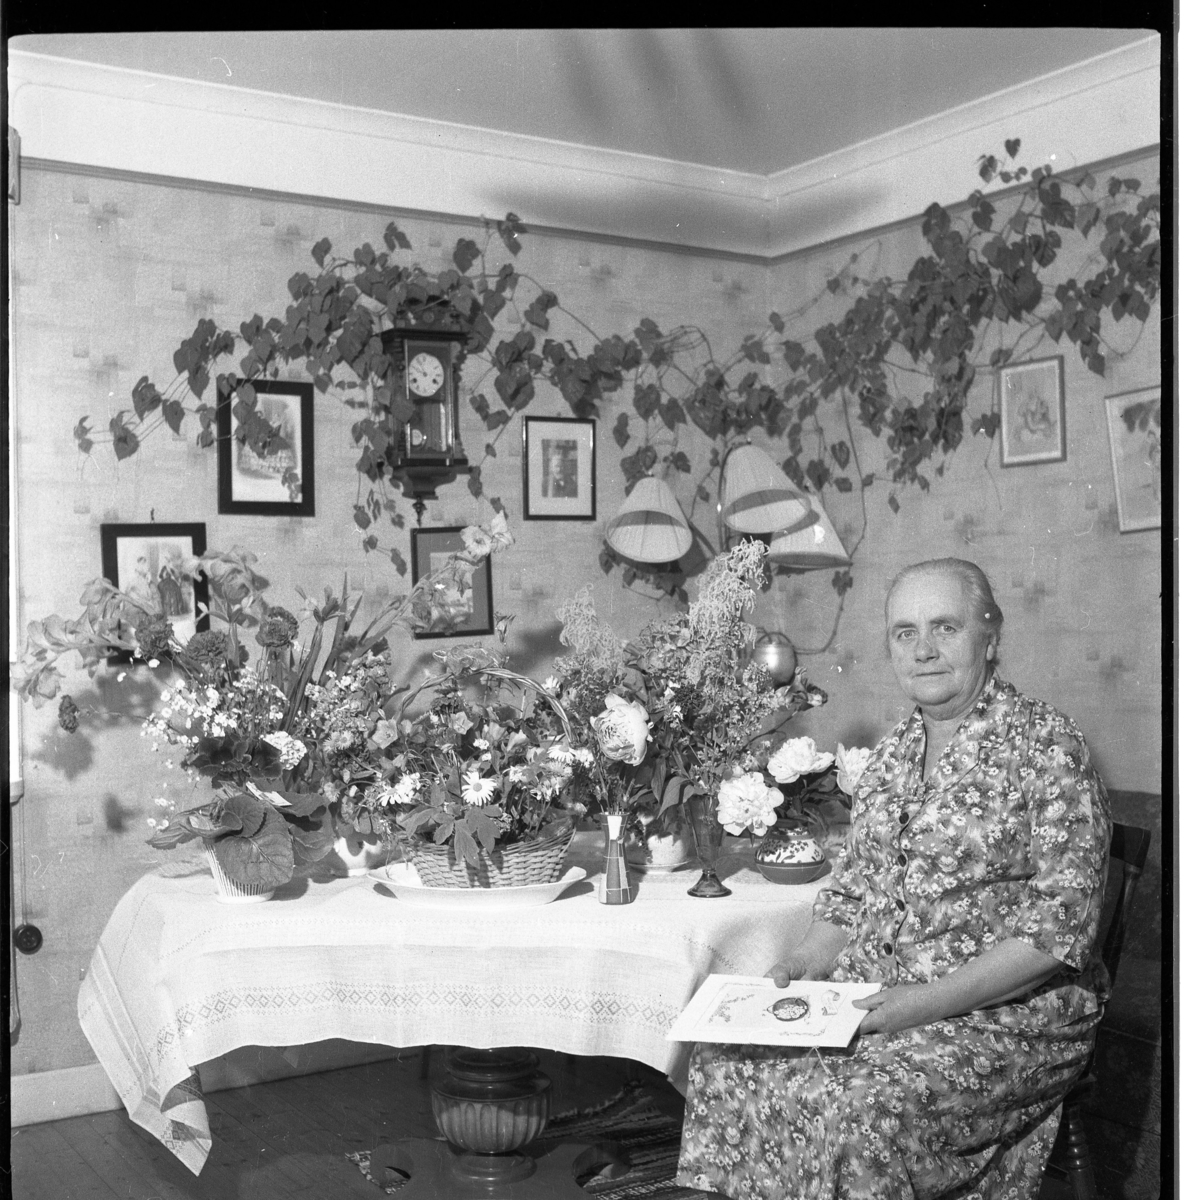 Ester Palm sitter vid ett bord fullt av blommor, förmodligen en högtidsdag.